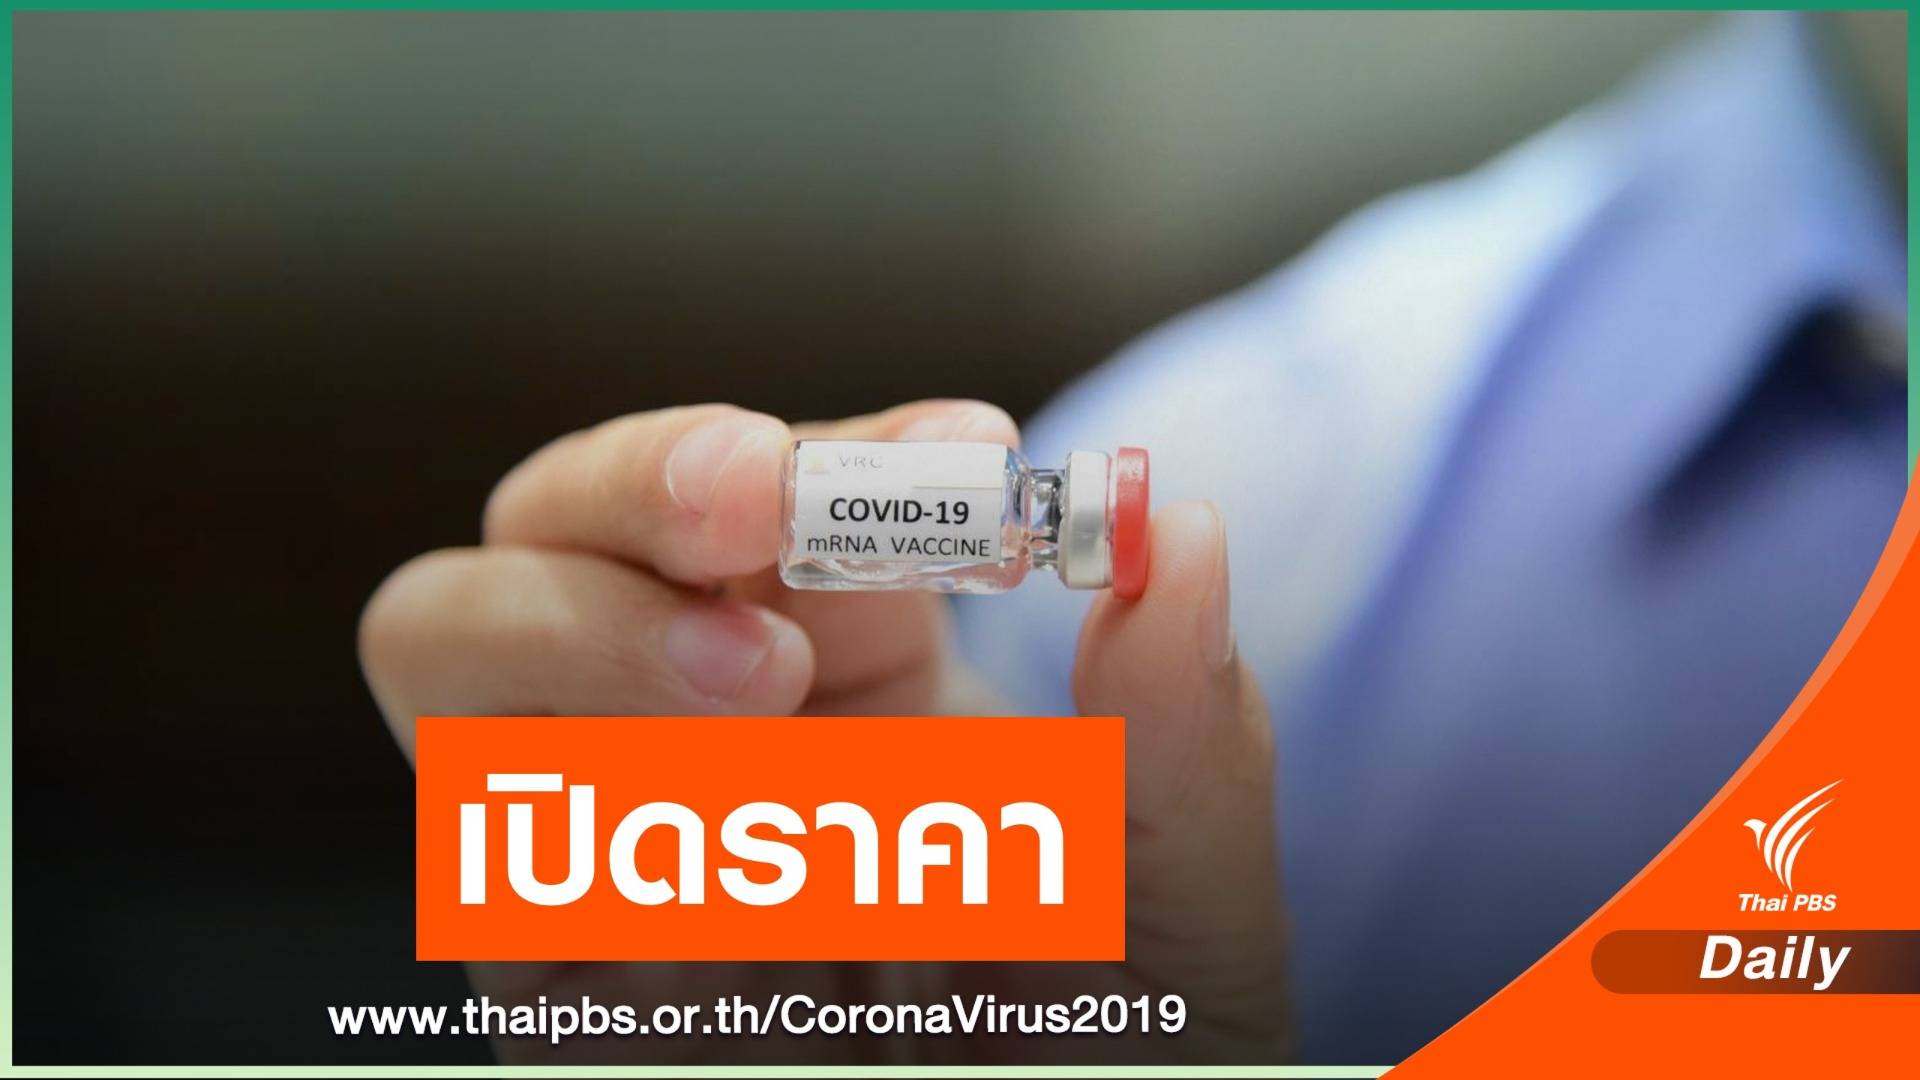 คาดการณ์วัคซีน COVID-19 ราคาเข็มละ 620 บาท 